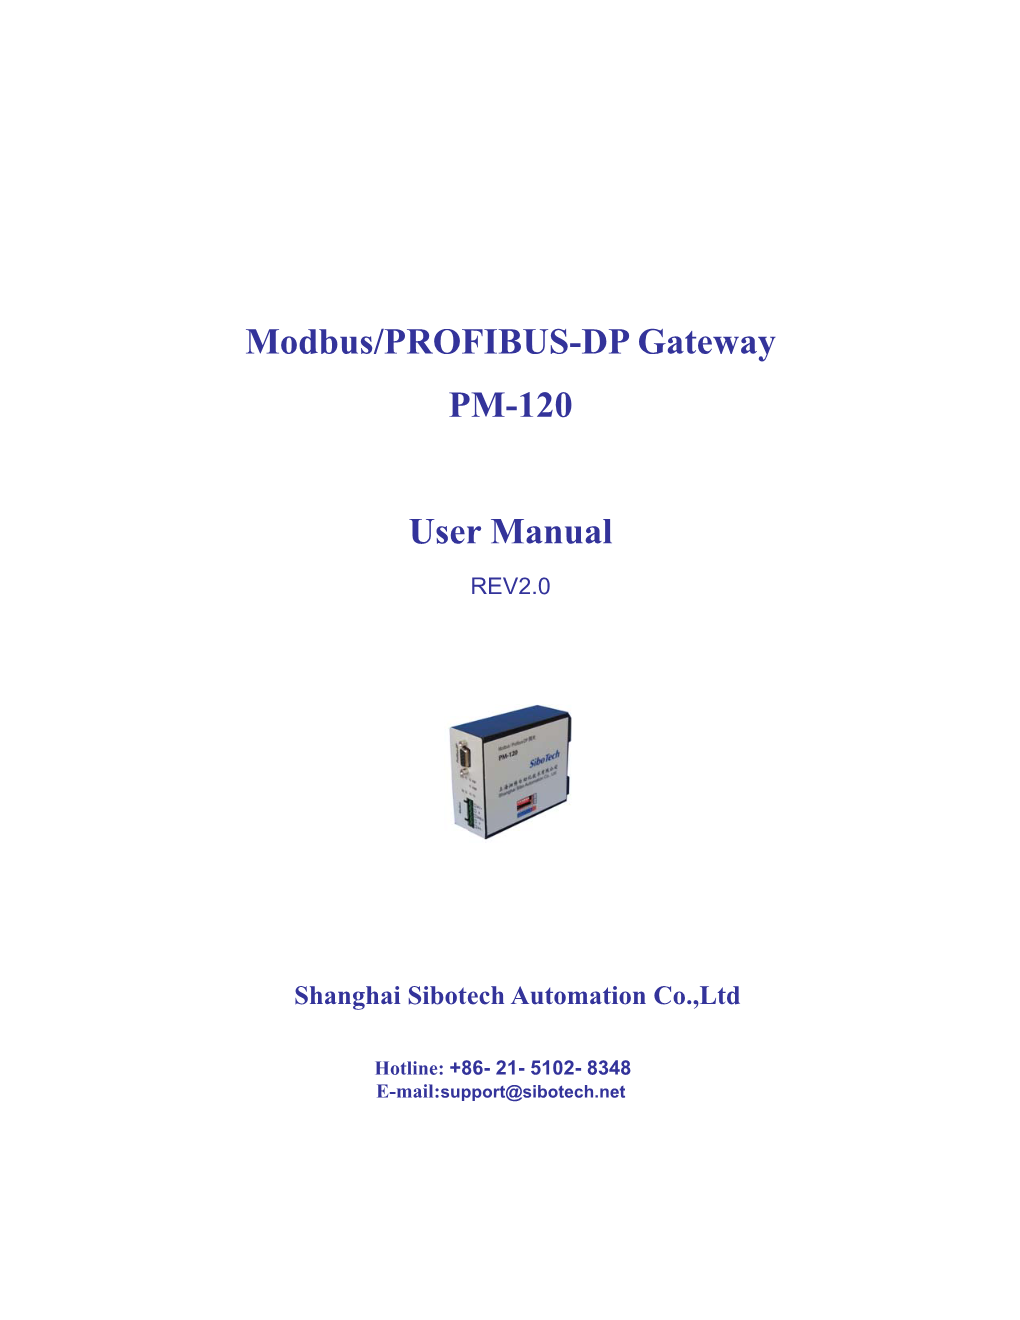 Modbus/PROFIBUS-DP Gateway PM-120